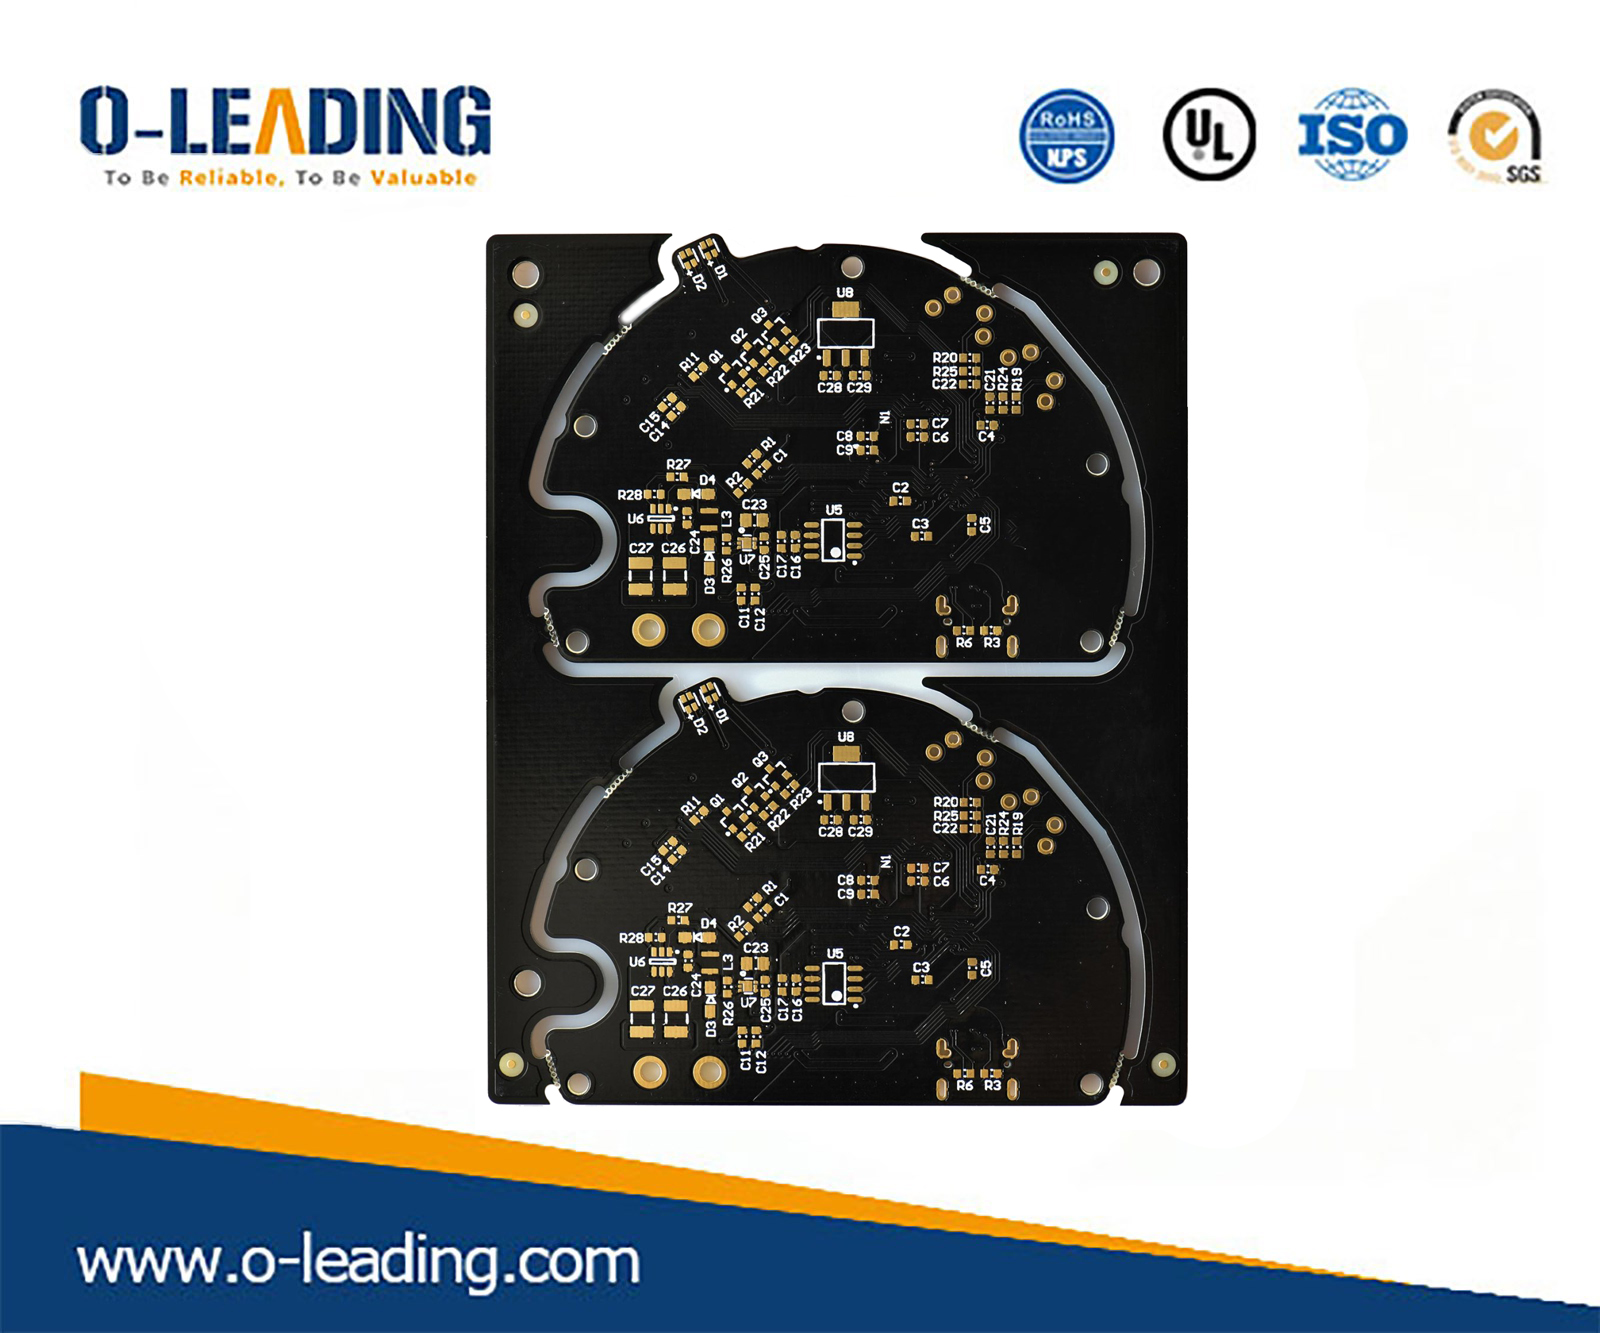 PCB di alta qualità all'ingrosso, fornitore di circuiti stampati, progettazione di circuiti stampati in Cina